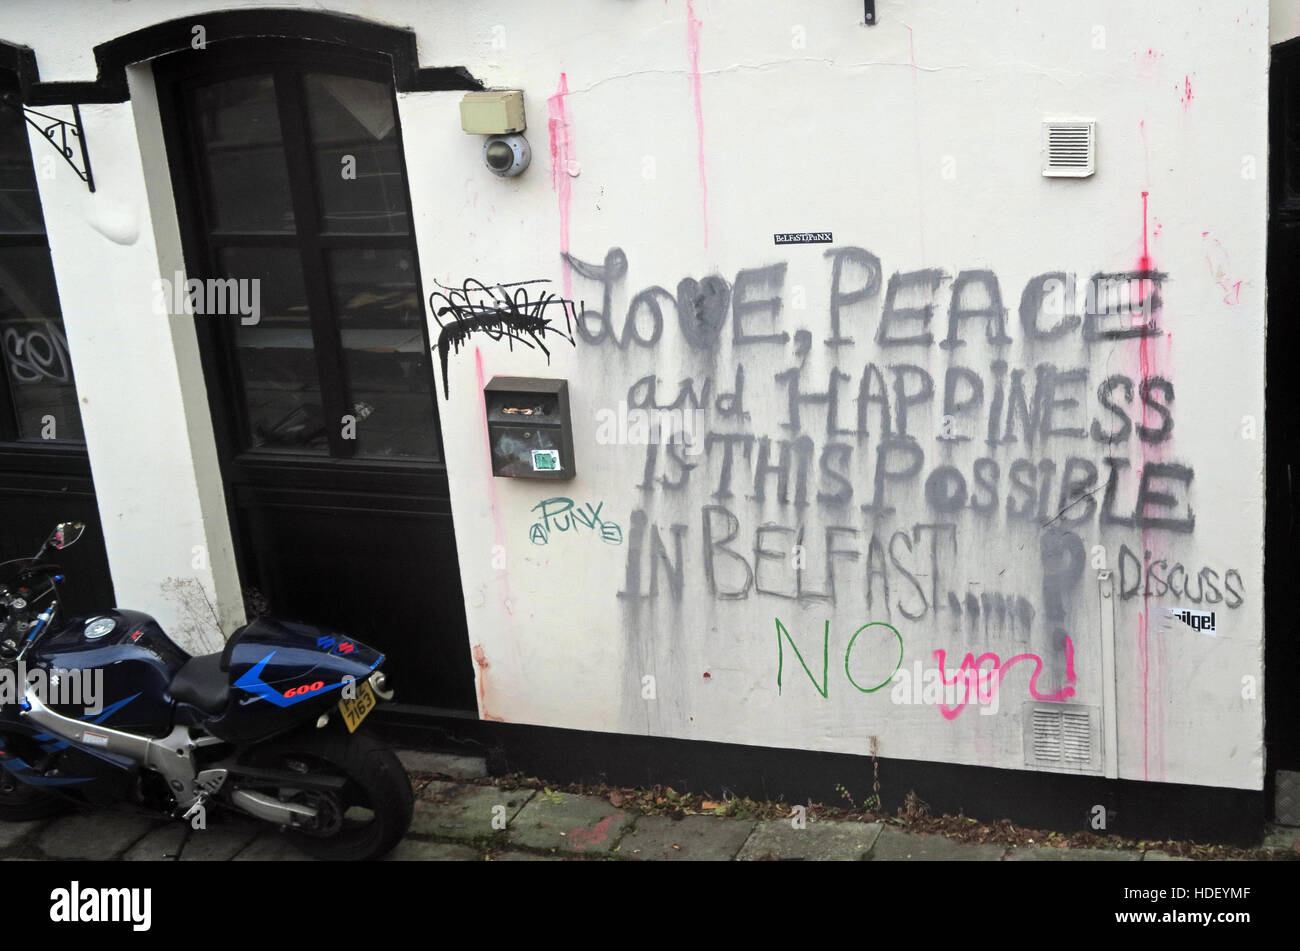 L'amour, la paix et le bonheur,est-ce possible à Belfast ? Discuter Banque D'Images